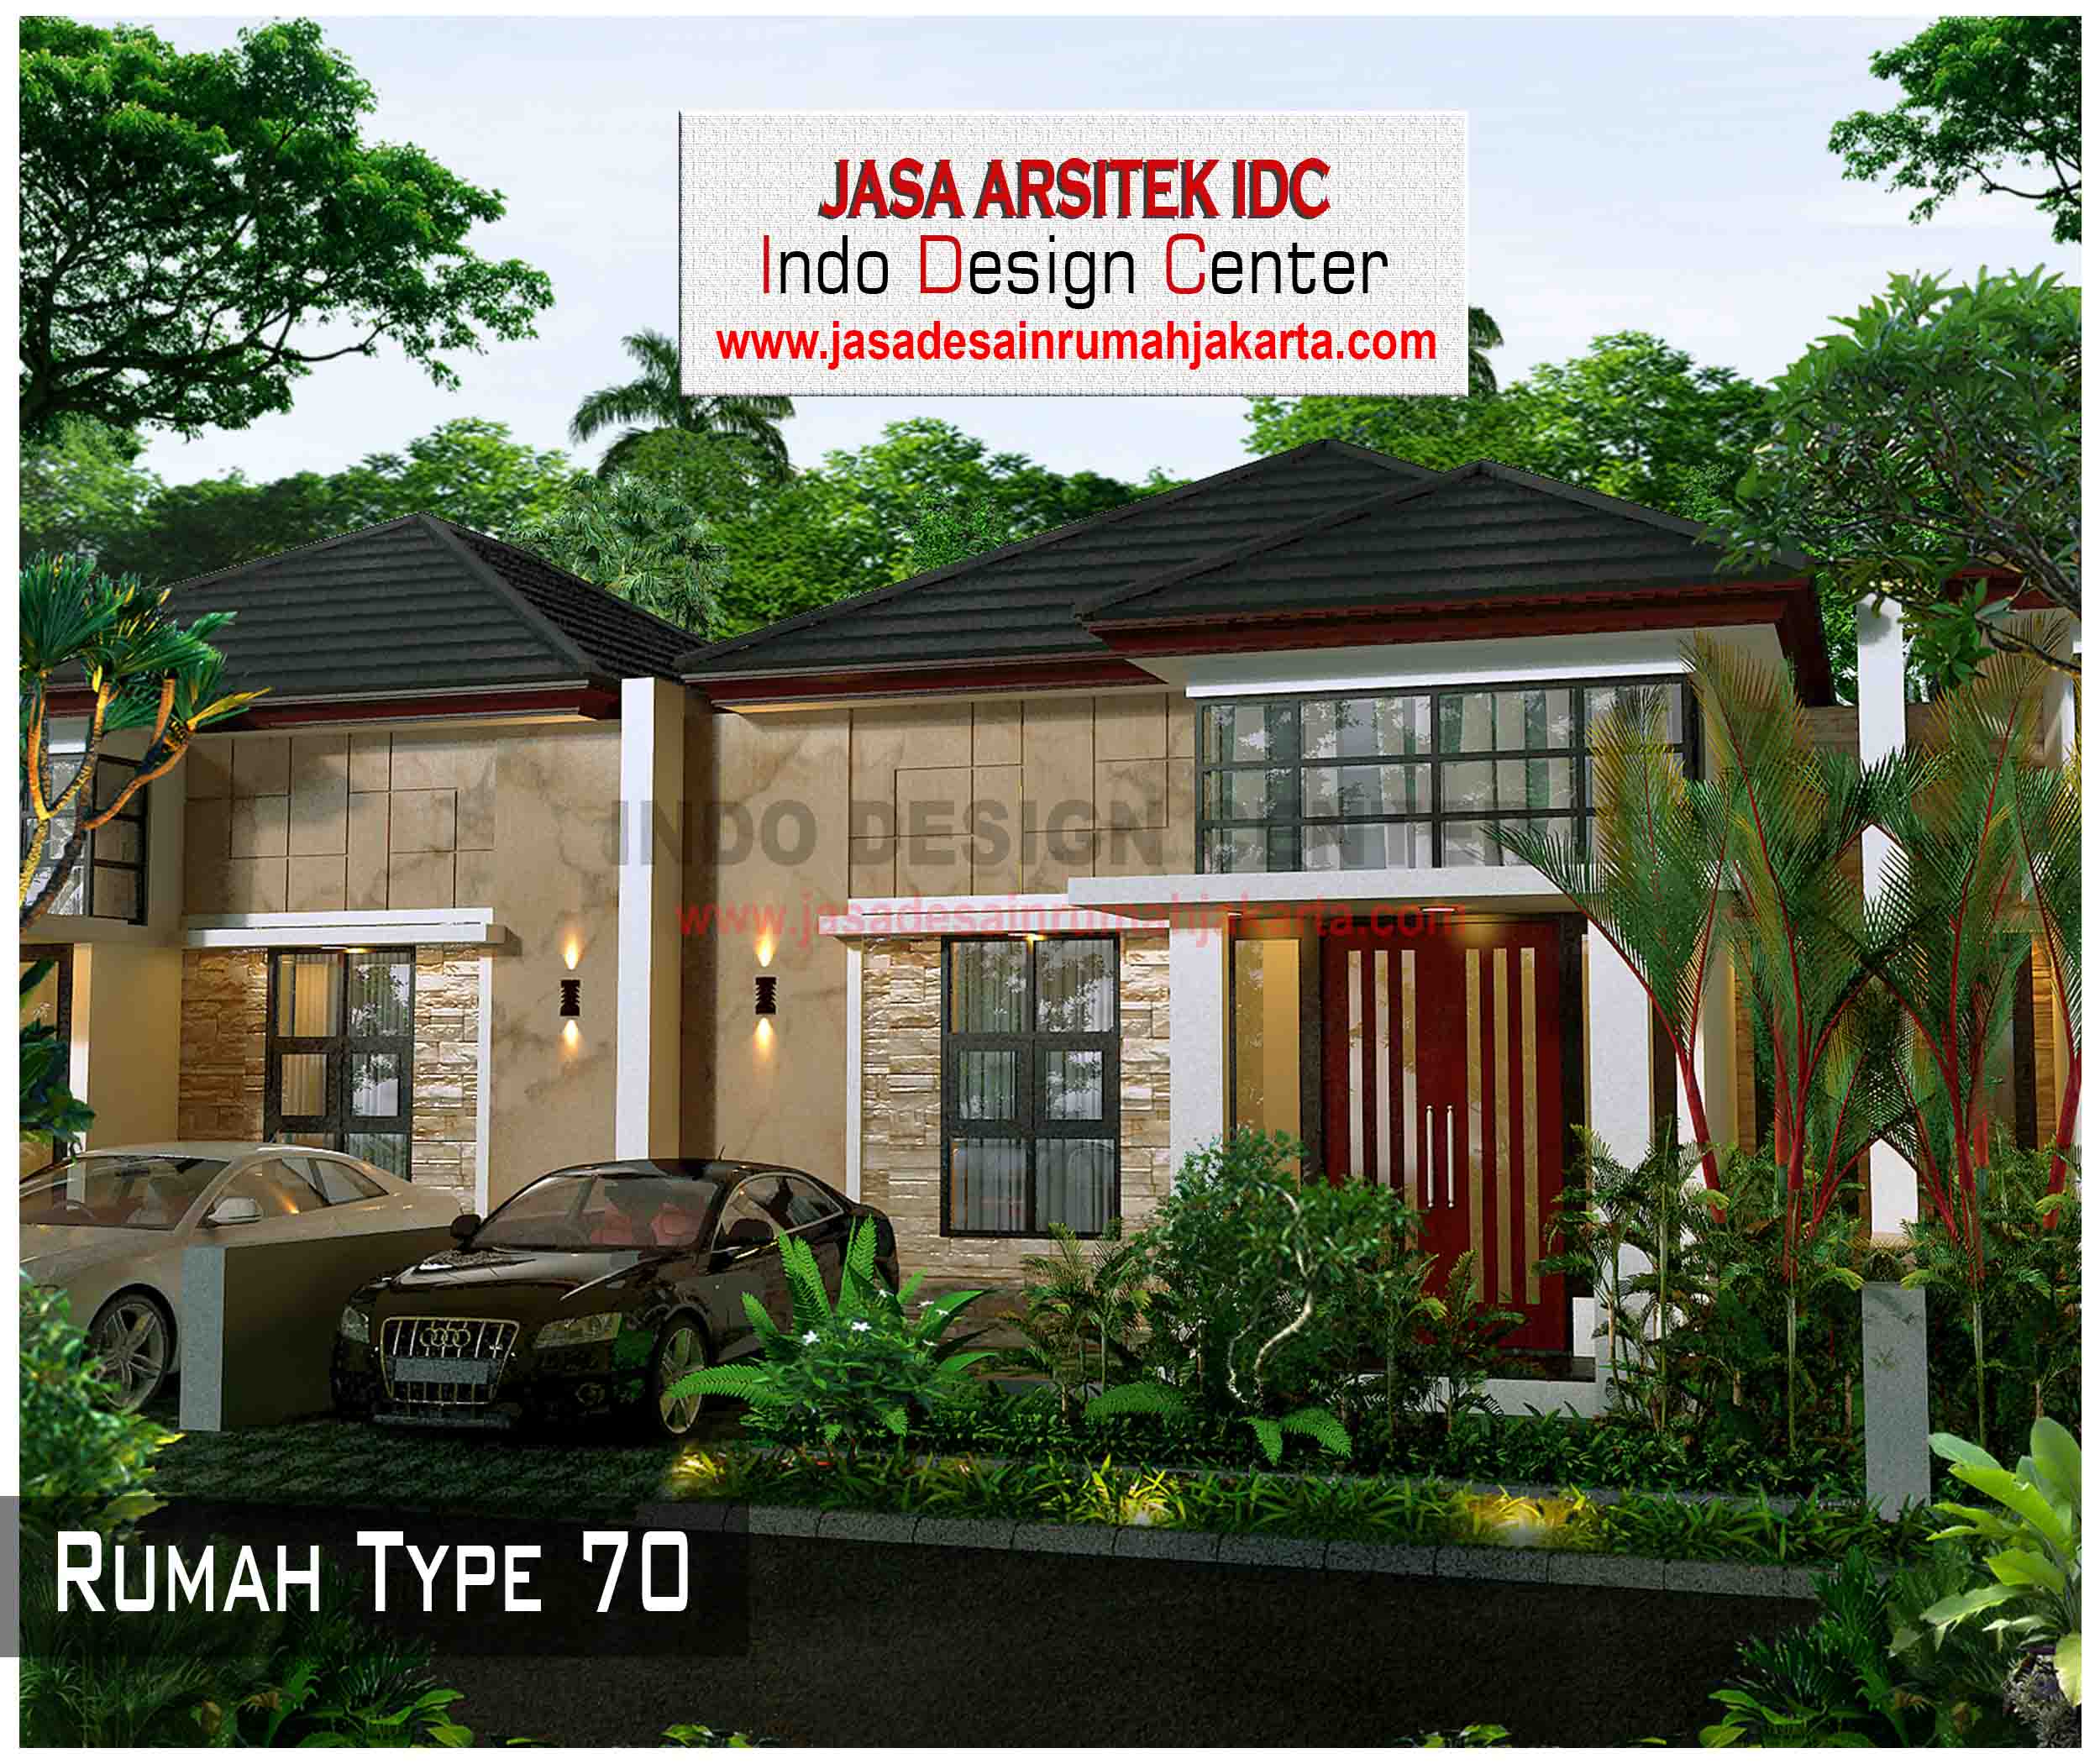 11 Desain Rumah Type 70 Jasa Desain Rumah Jakarta